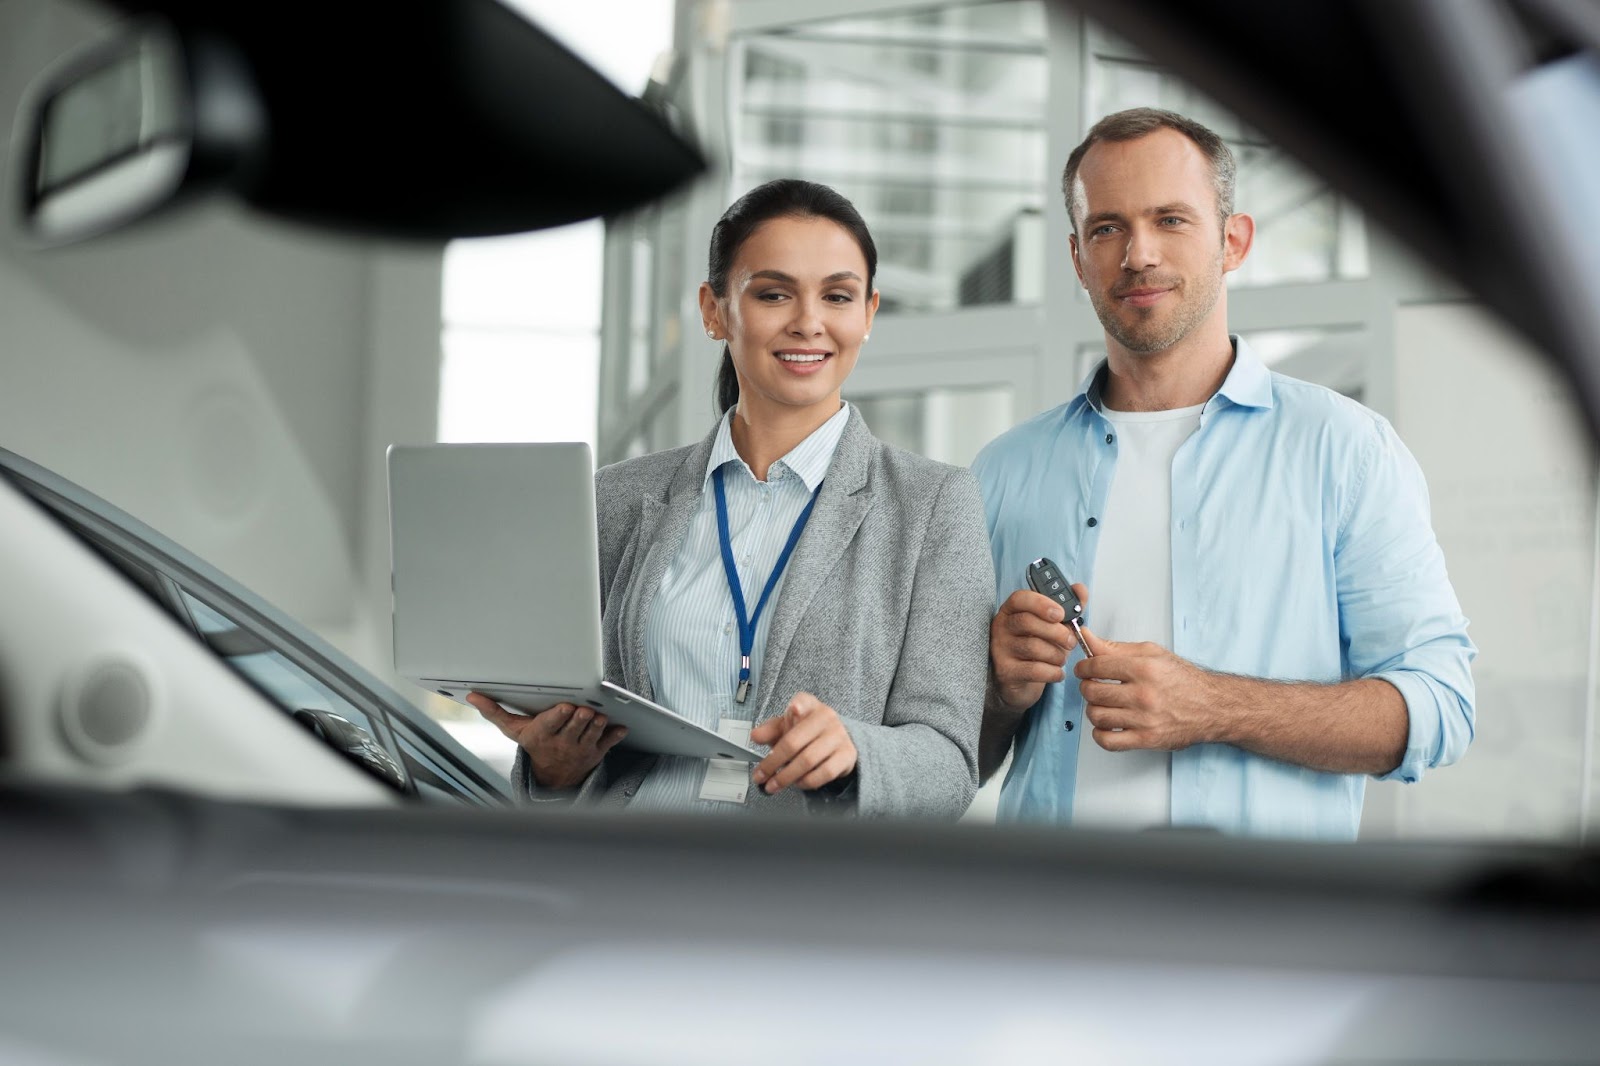 Uma mulher de blazer e crachá aponta para um carro, enquanto segura um notebook aberto na ficha técnica de carros, ao lado dela um homem de camisa azul segura a chave do veículo.